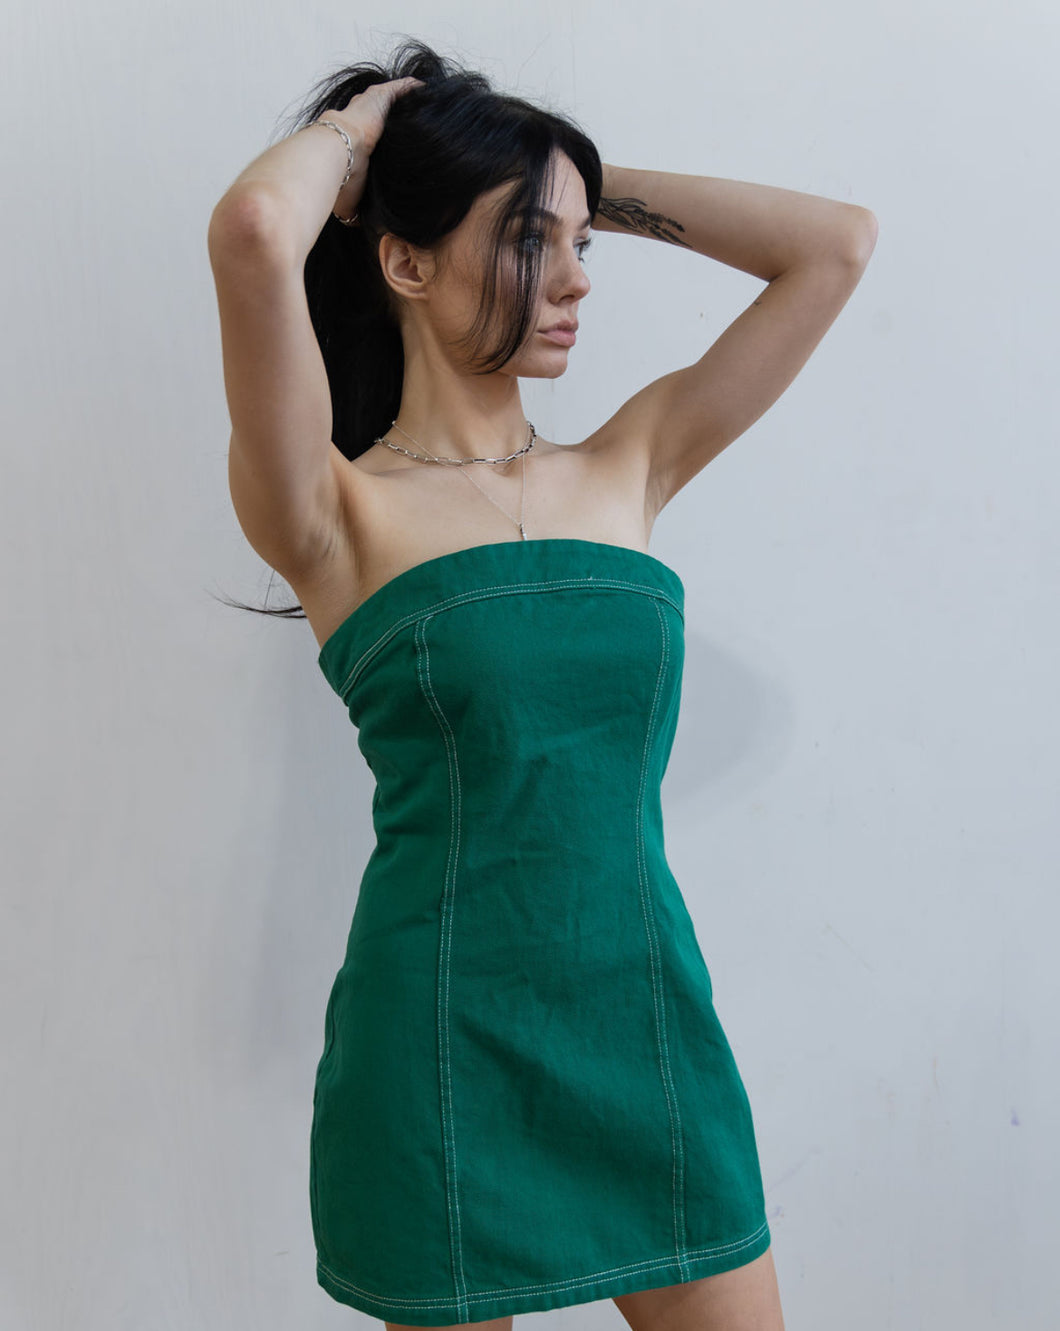 The Green Mini Dress